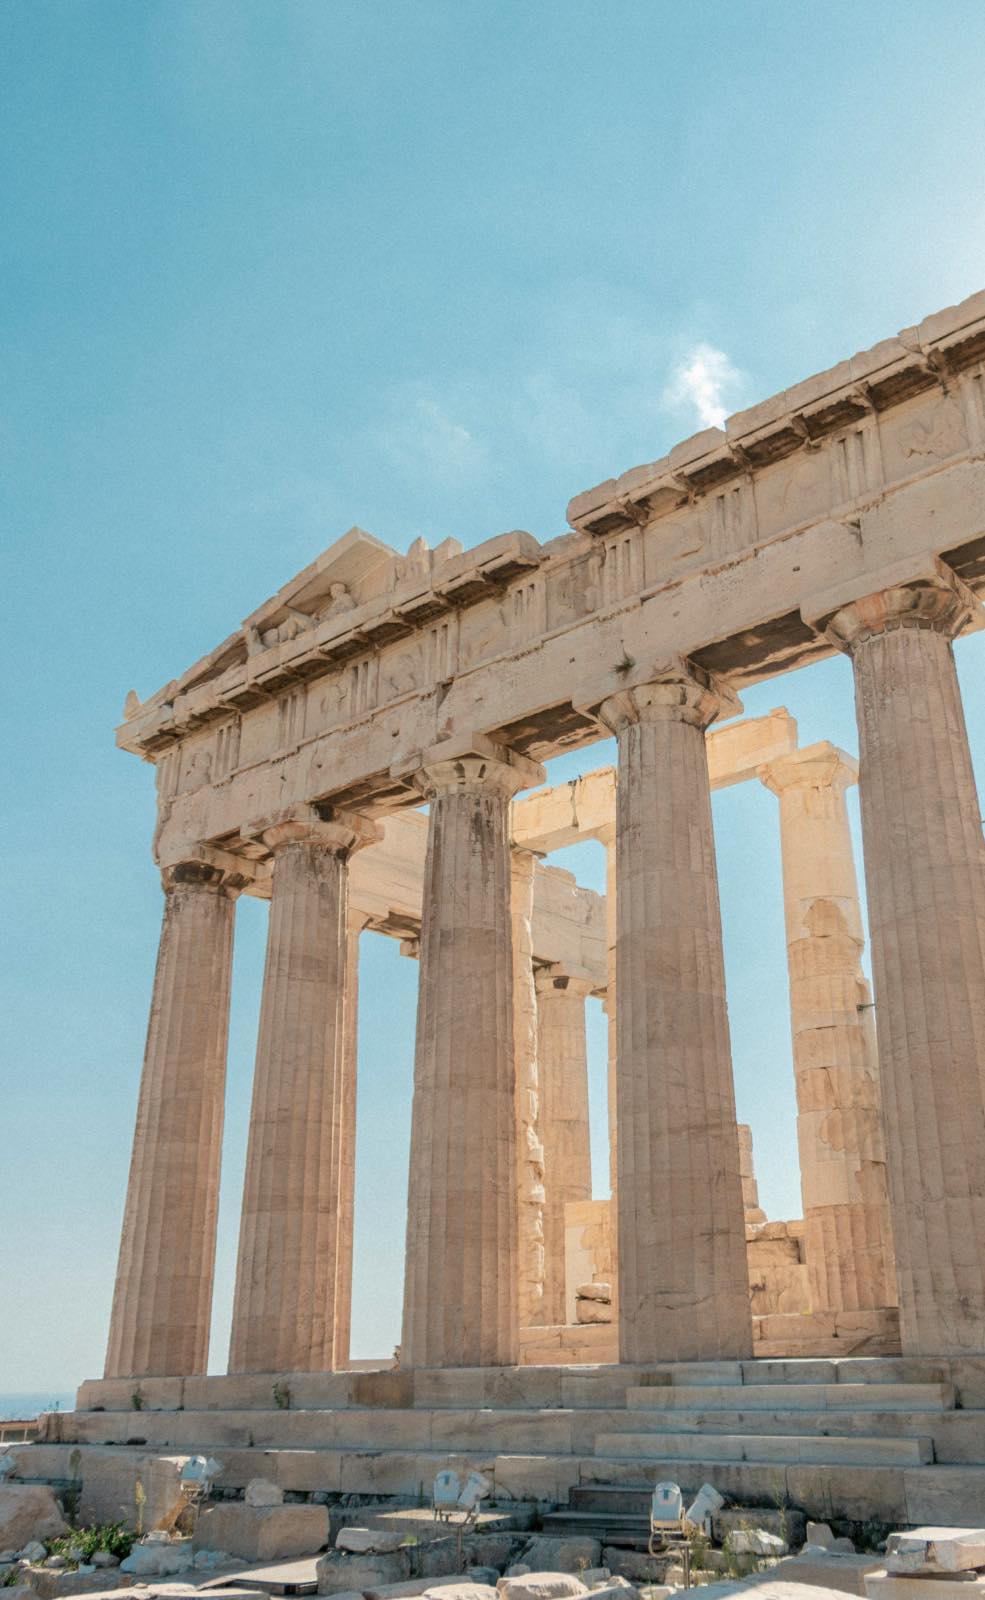 partenón de atenas, arquitectura griega antigua, templo de mármol con columnas